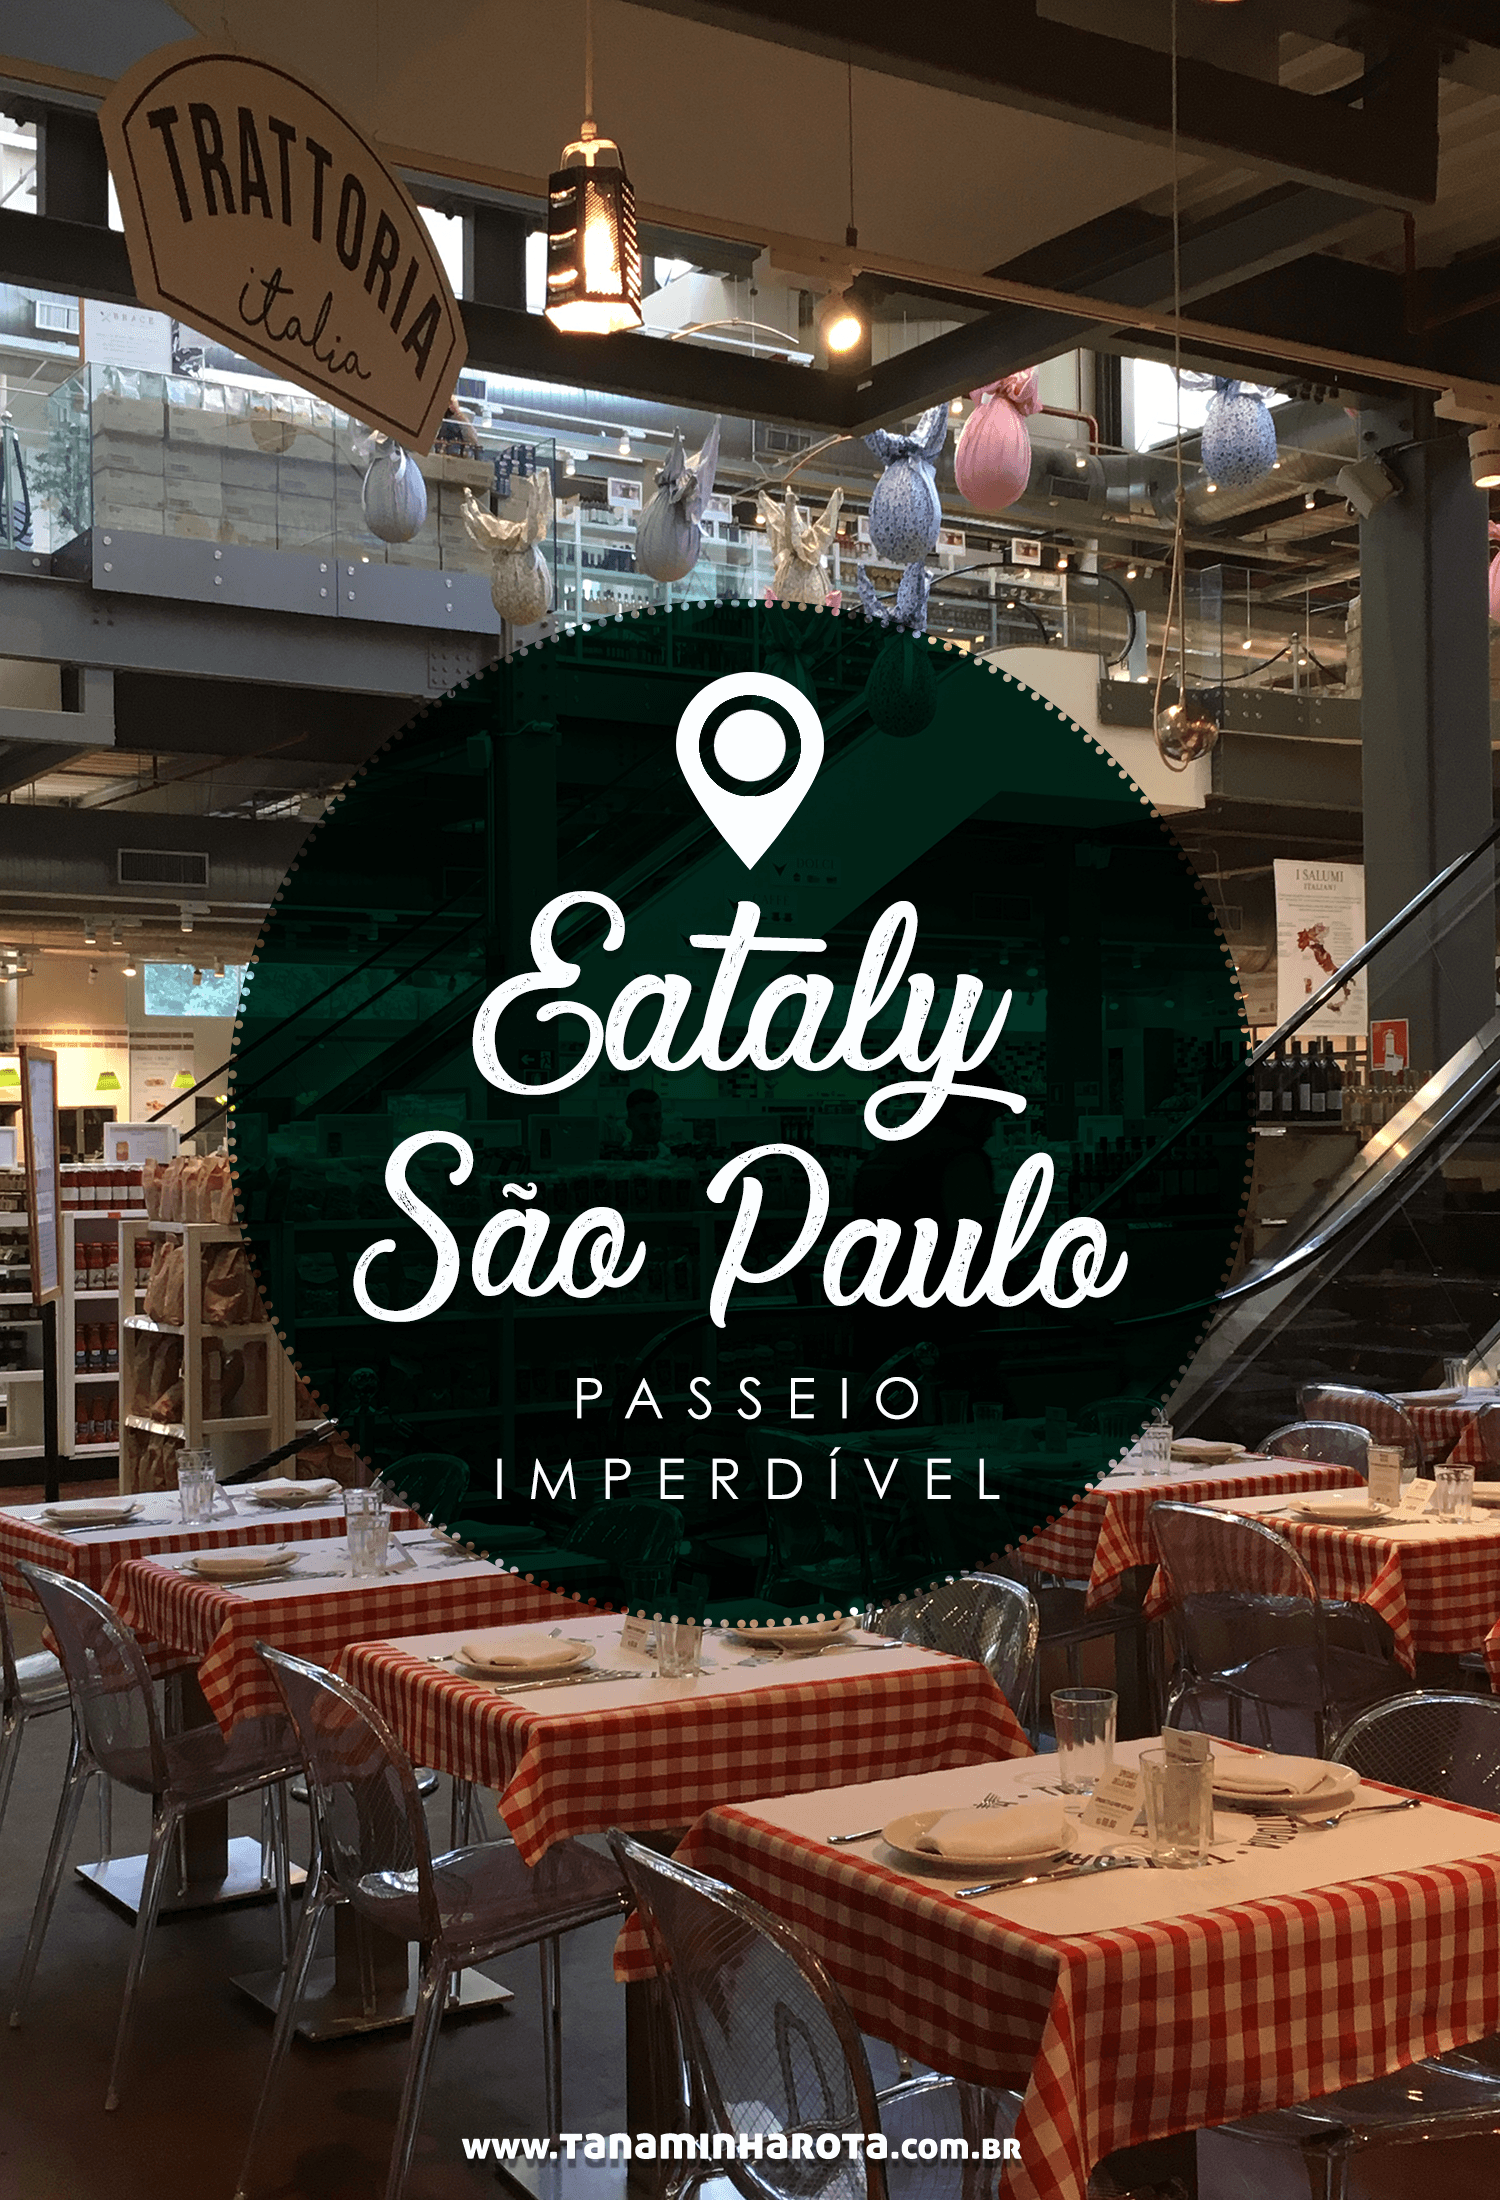 Você precisa conhecer o Eataly São Paulo, opção incrível de gastromia italiana na capital paulista! #eataly #saopaulo #gastronomia #brasil #viagem